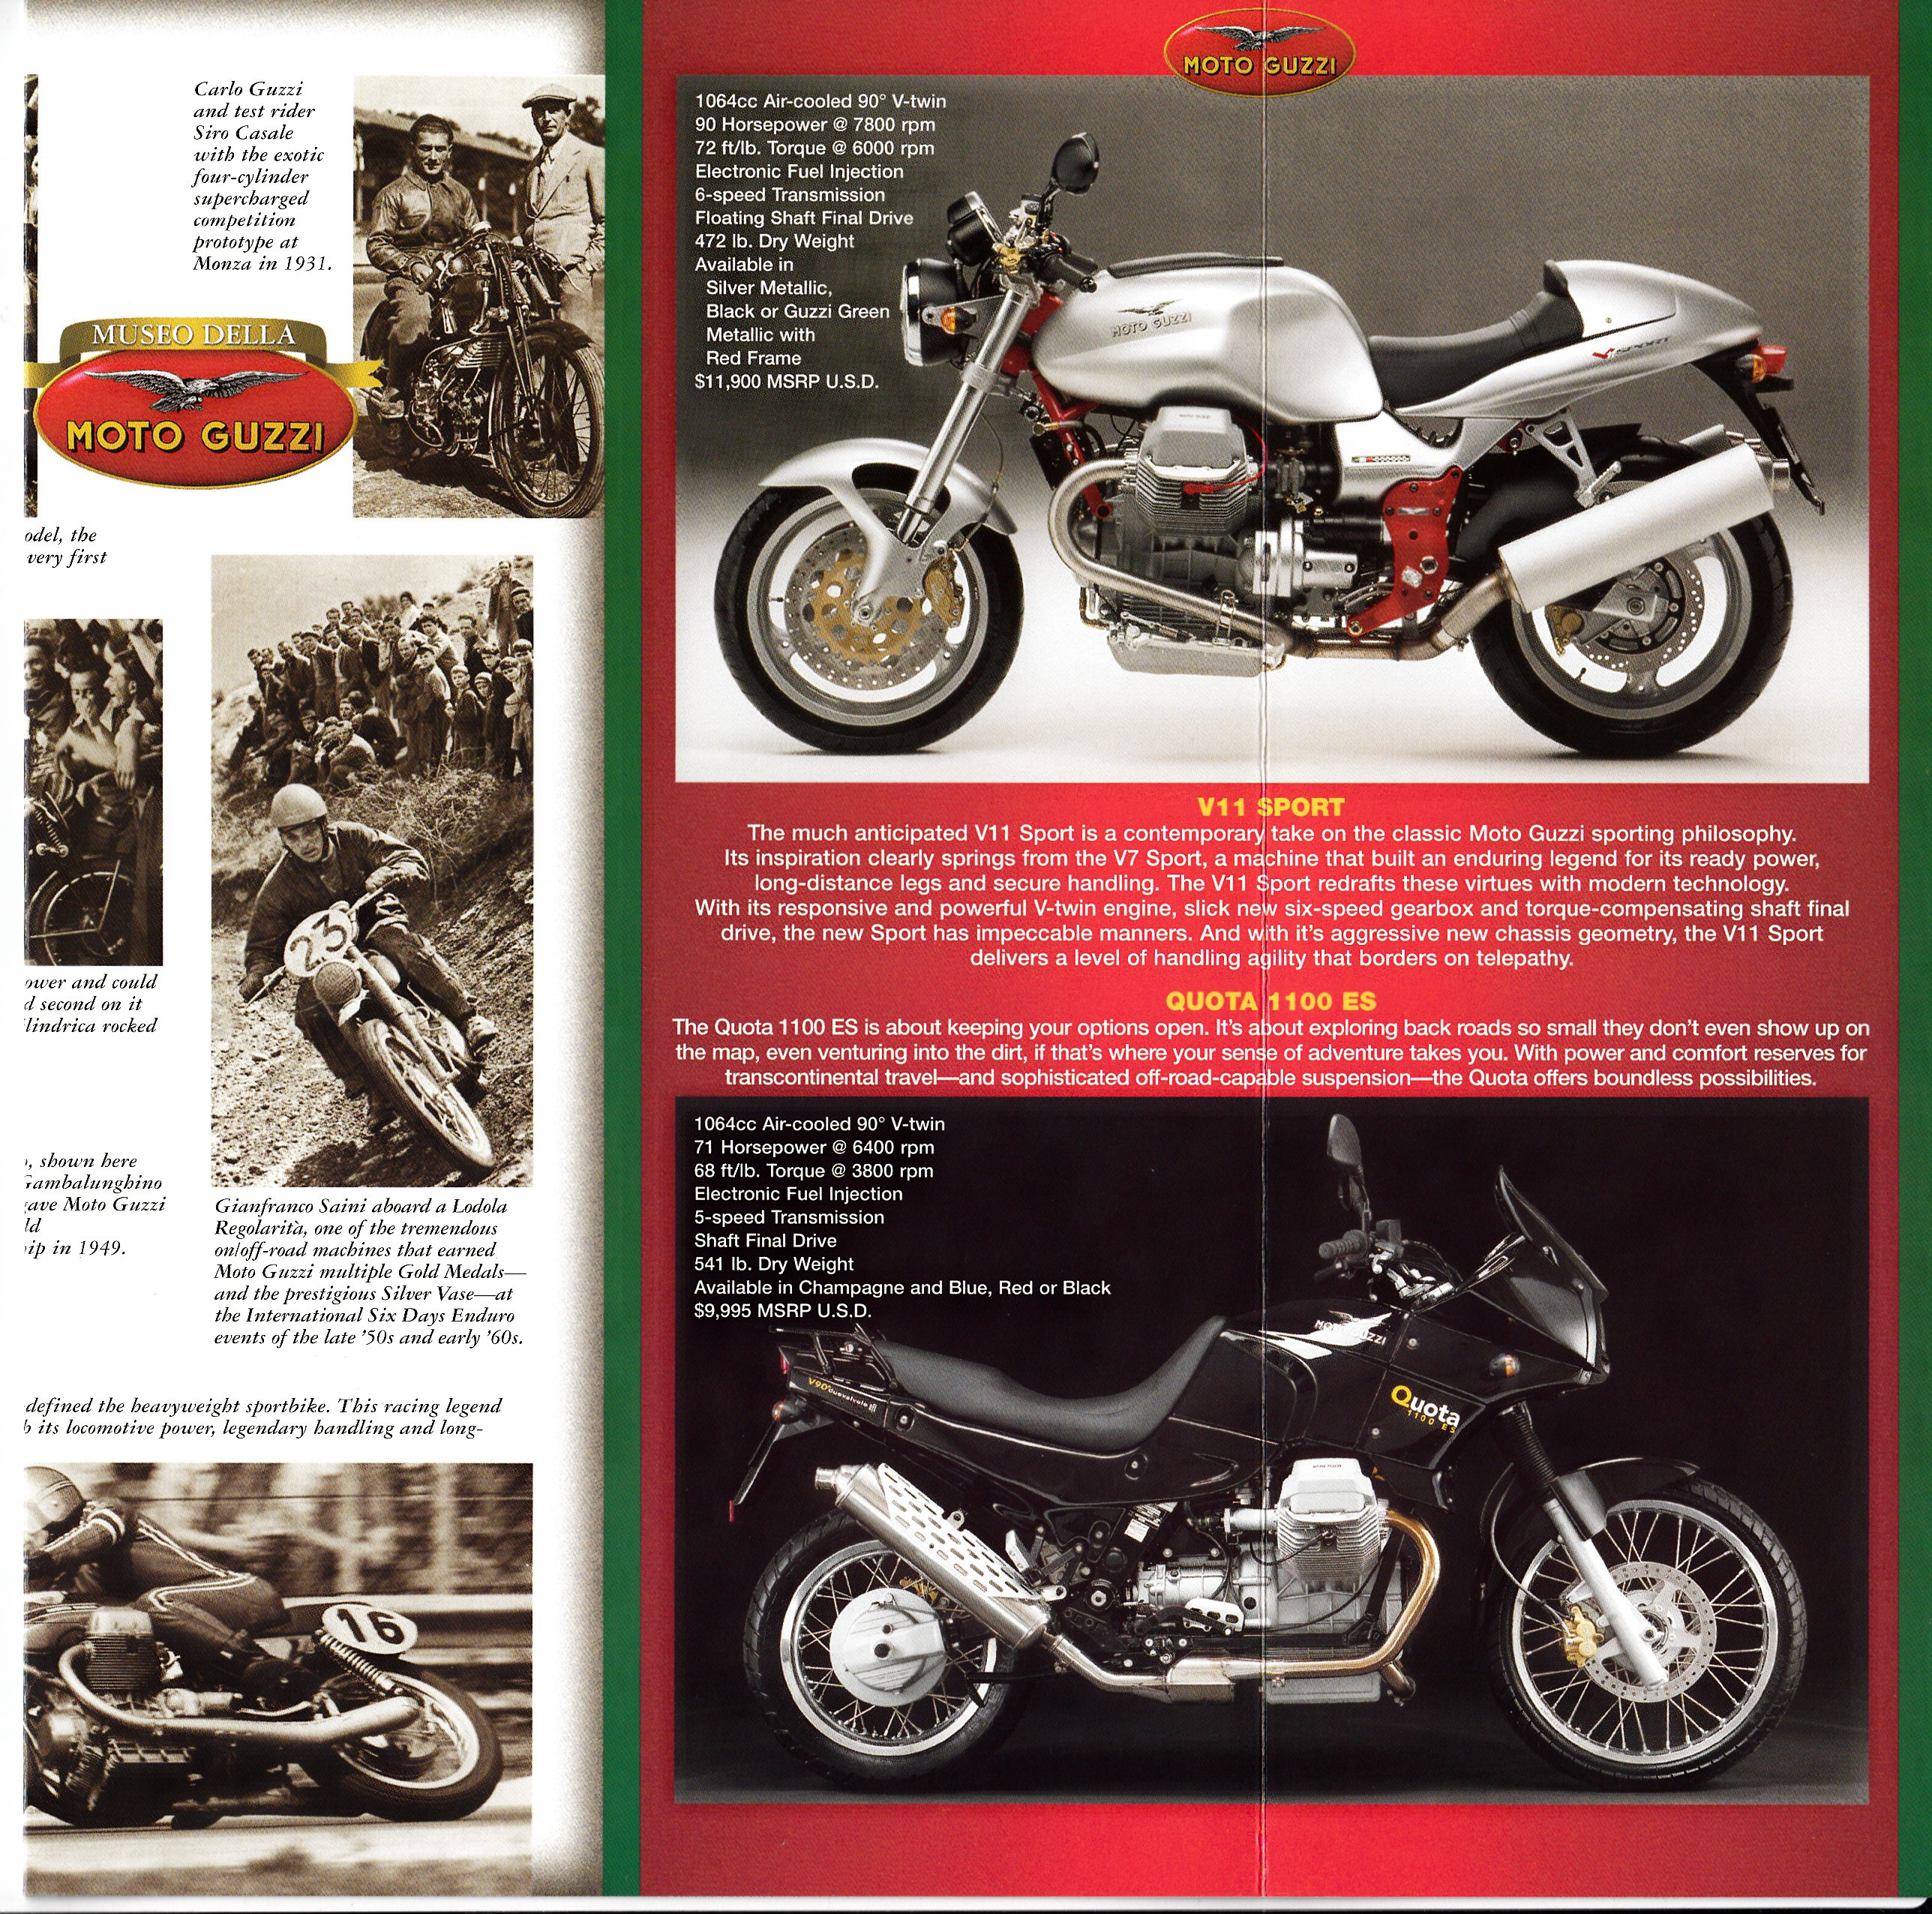 Brochure - Moto Guzzi Museo Della Moto Guzzi (1999)